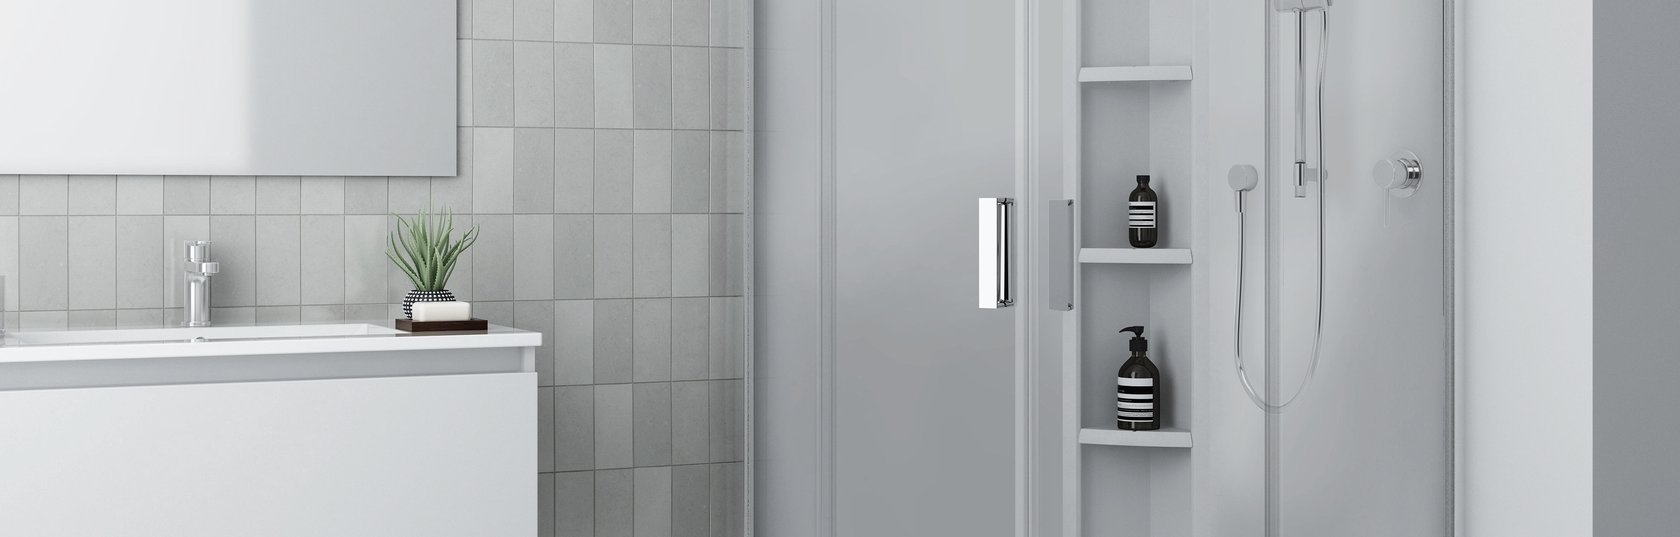 Redefining Shower Design